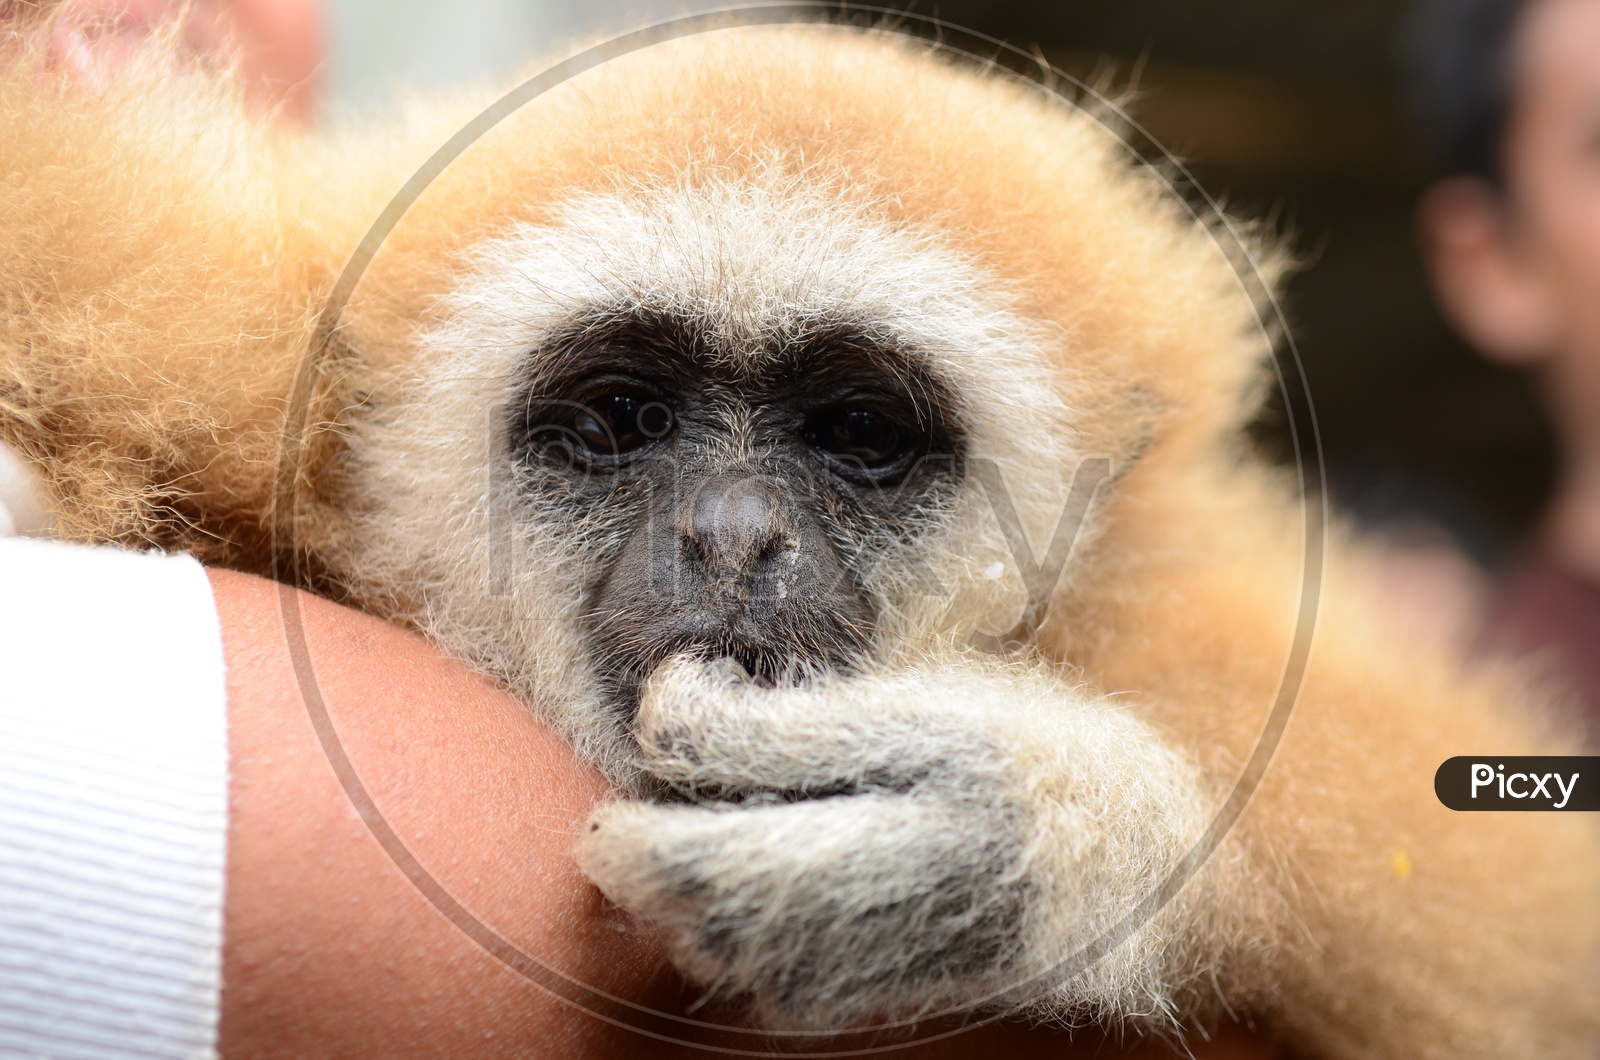 Gibbon monkey face close up